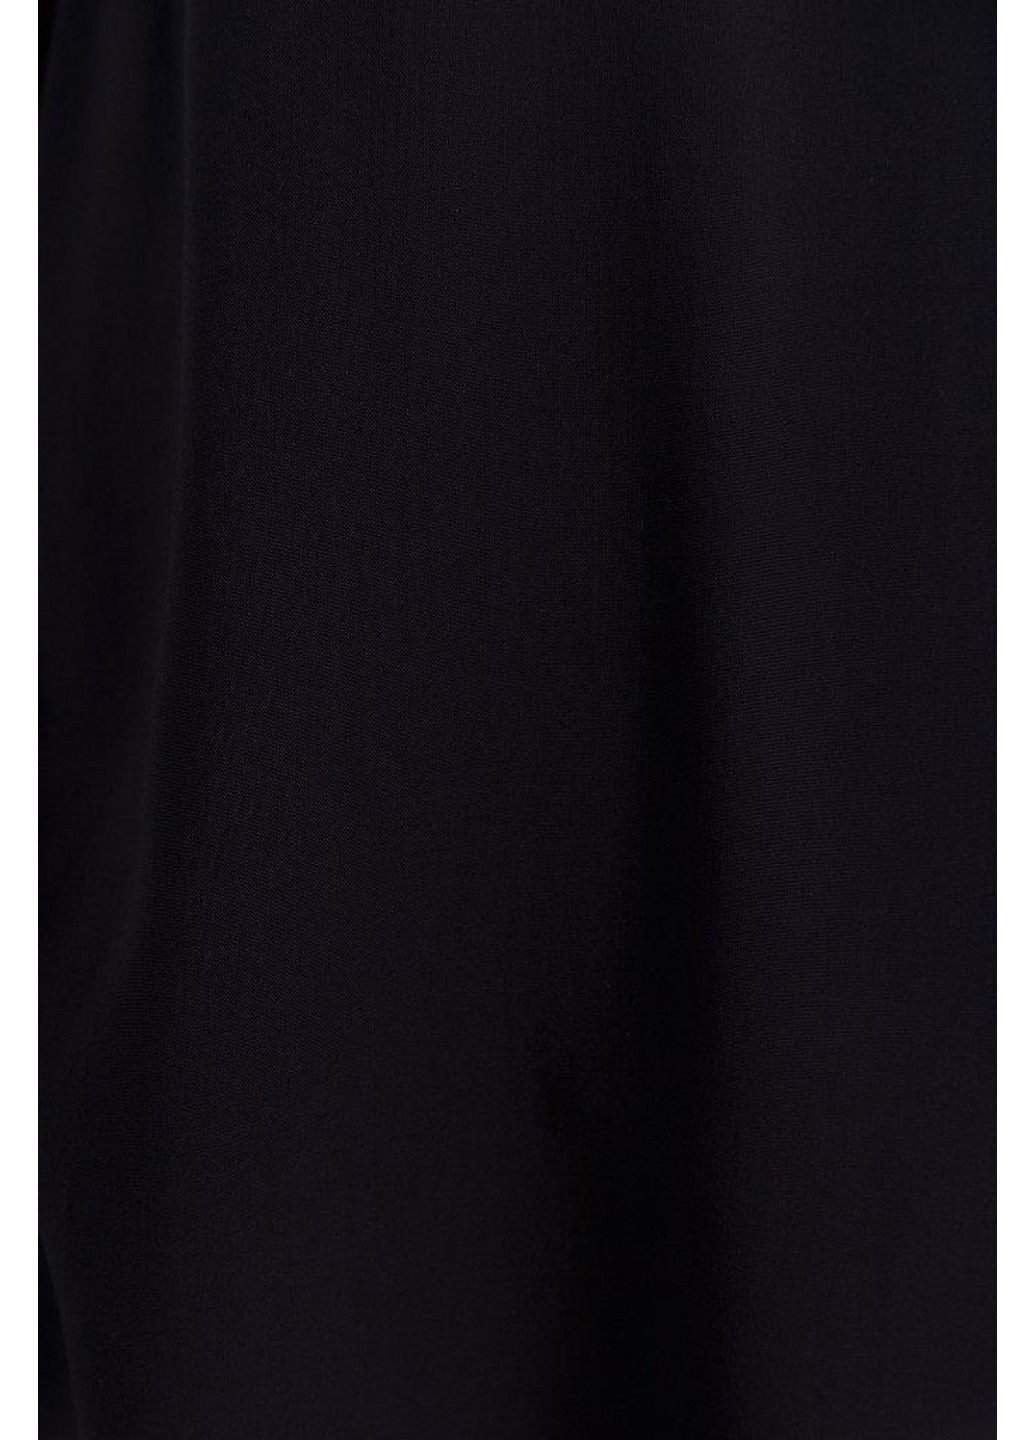 Темно-синяя летняя блузка s19-32071-101 Finn Flare